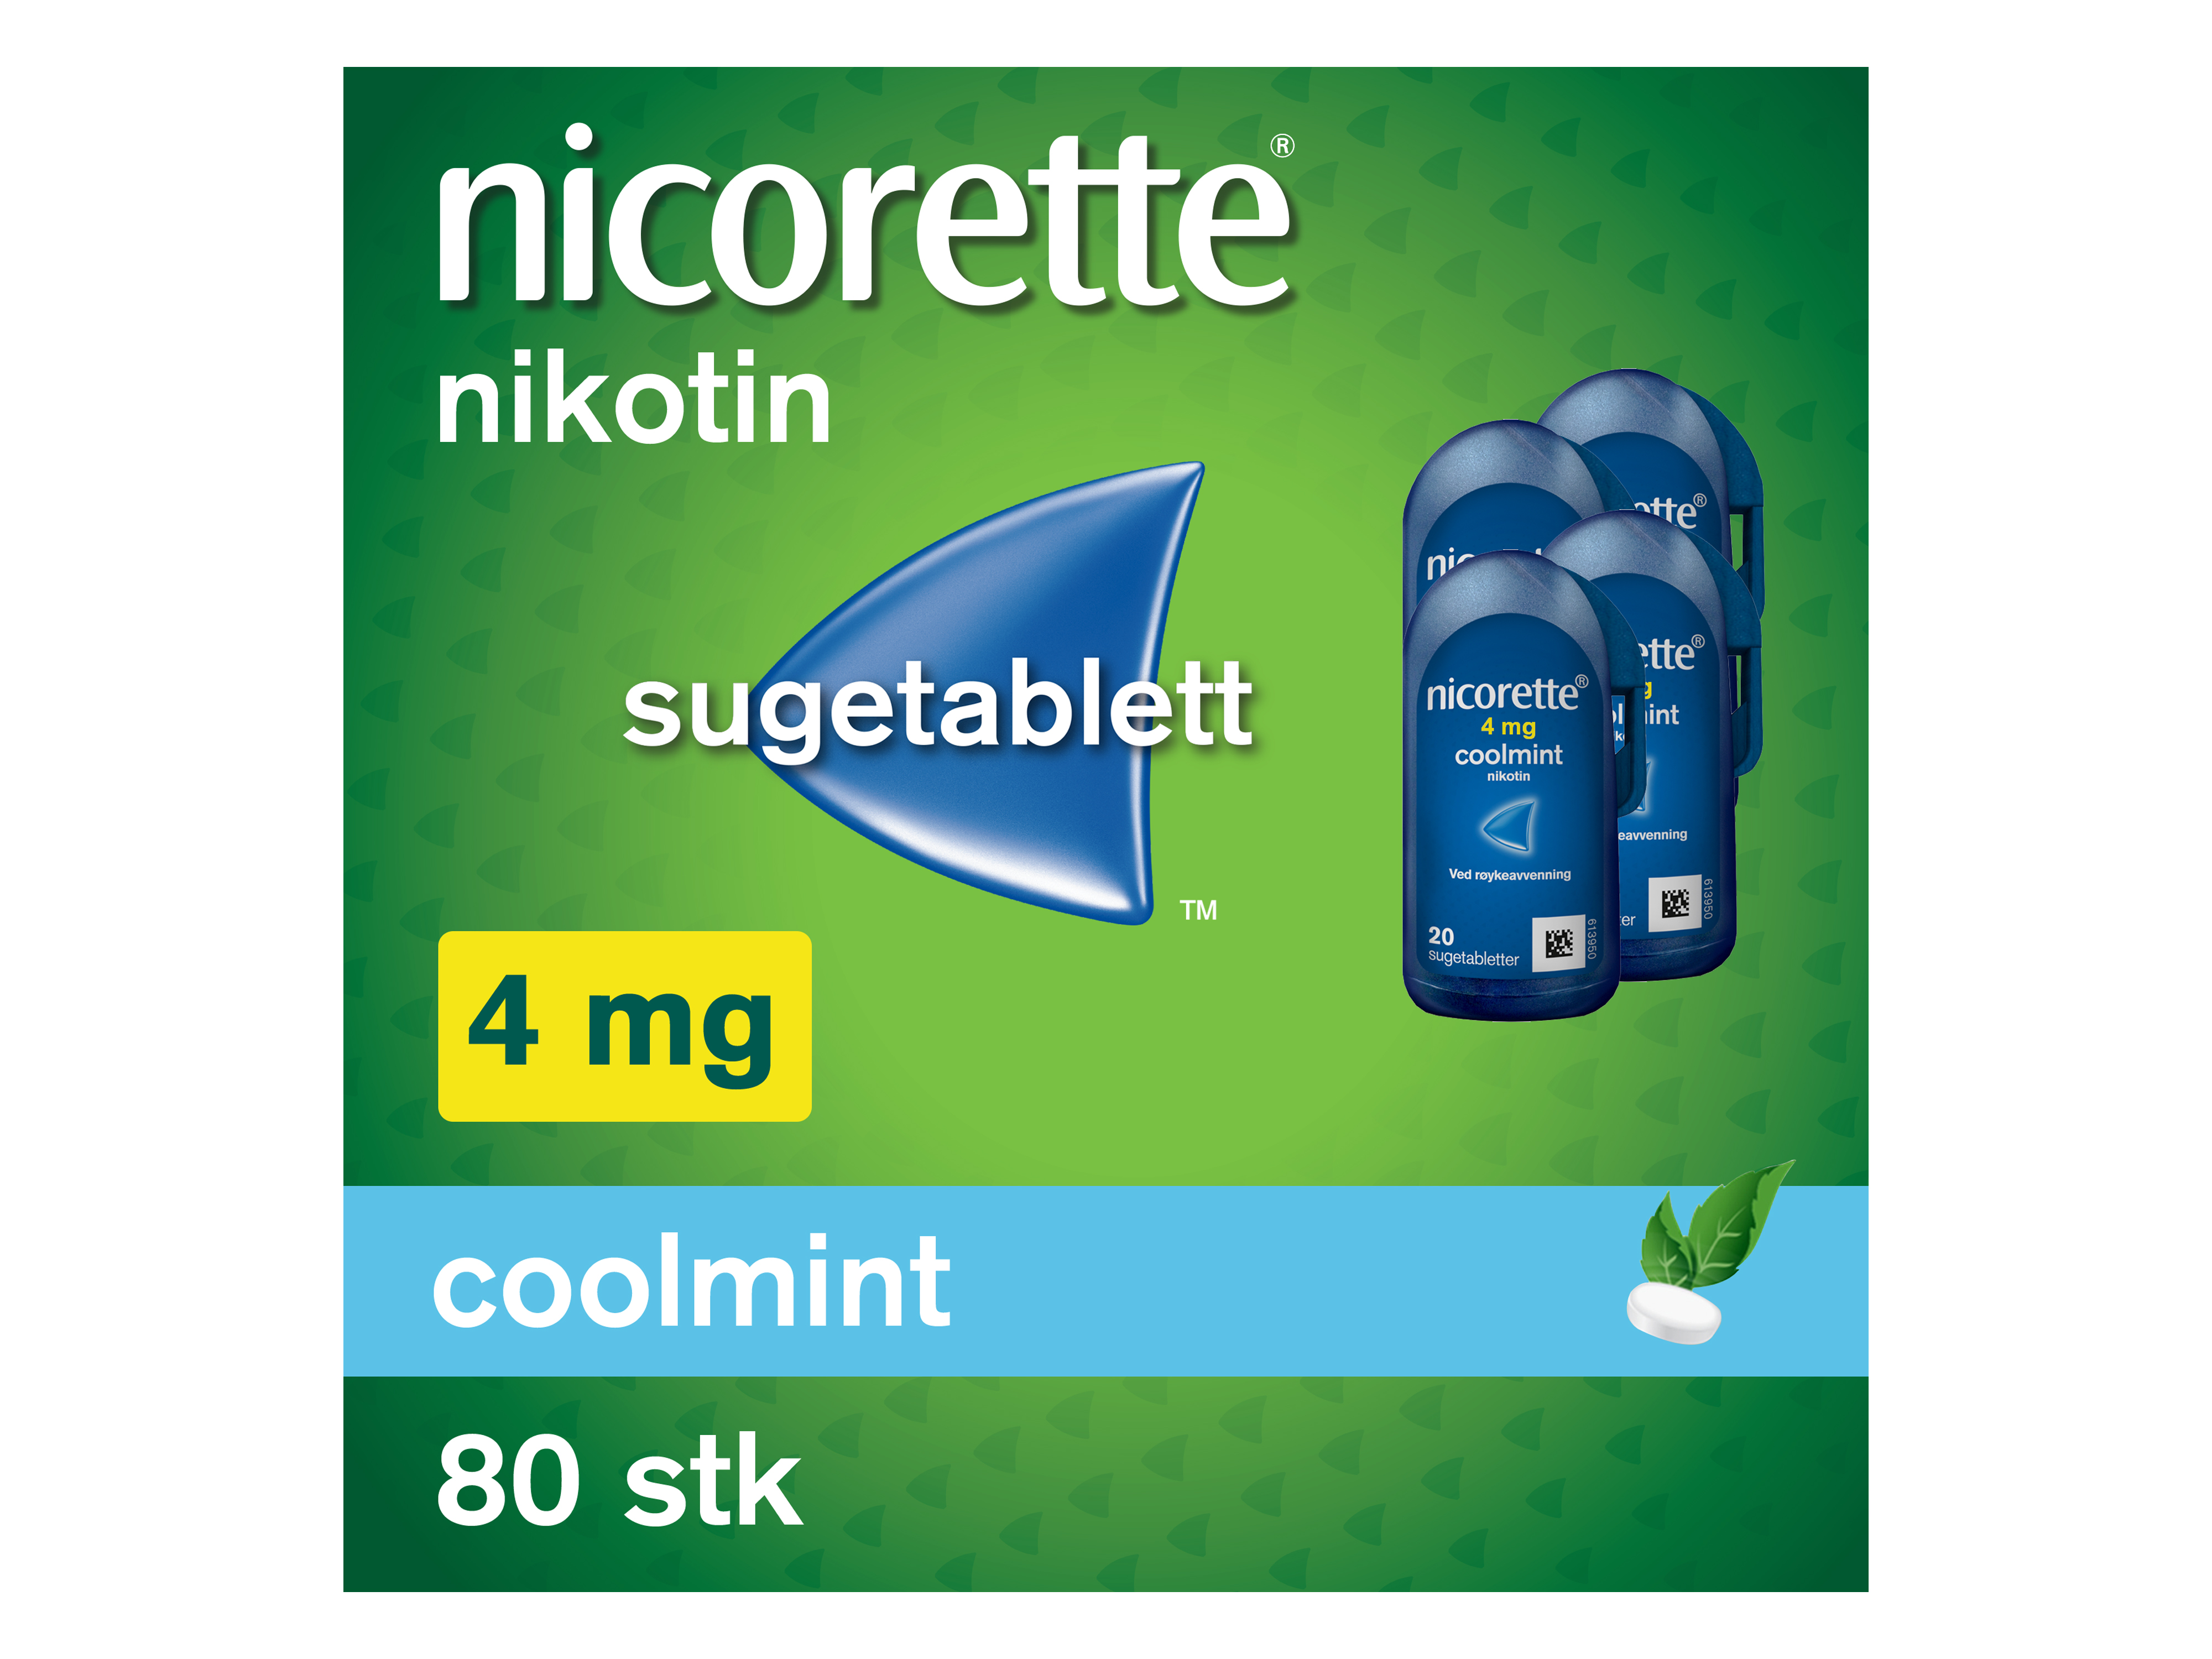 Nicorette Sugetablett, 4 mg nikotin, Coolmint 80 stk., Slutte å røyke